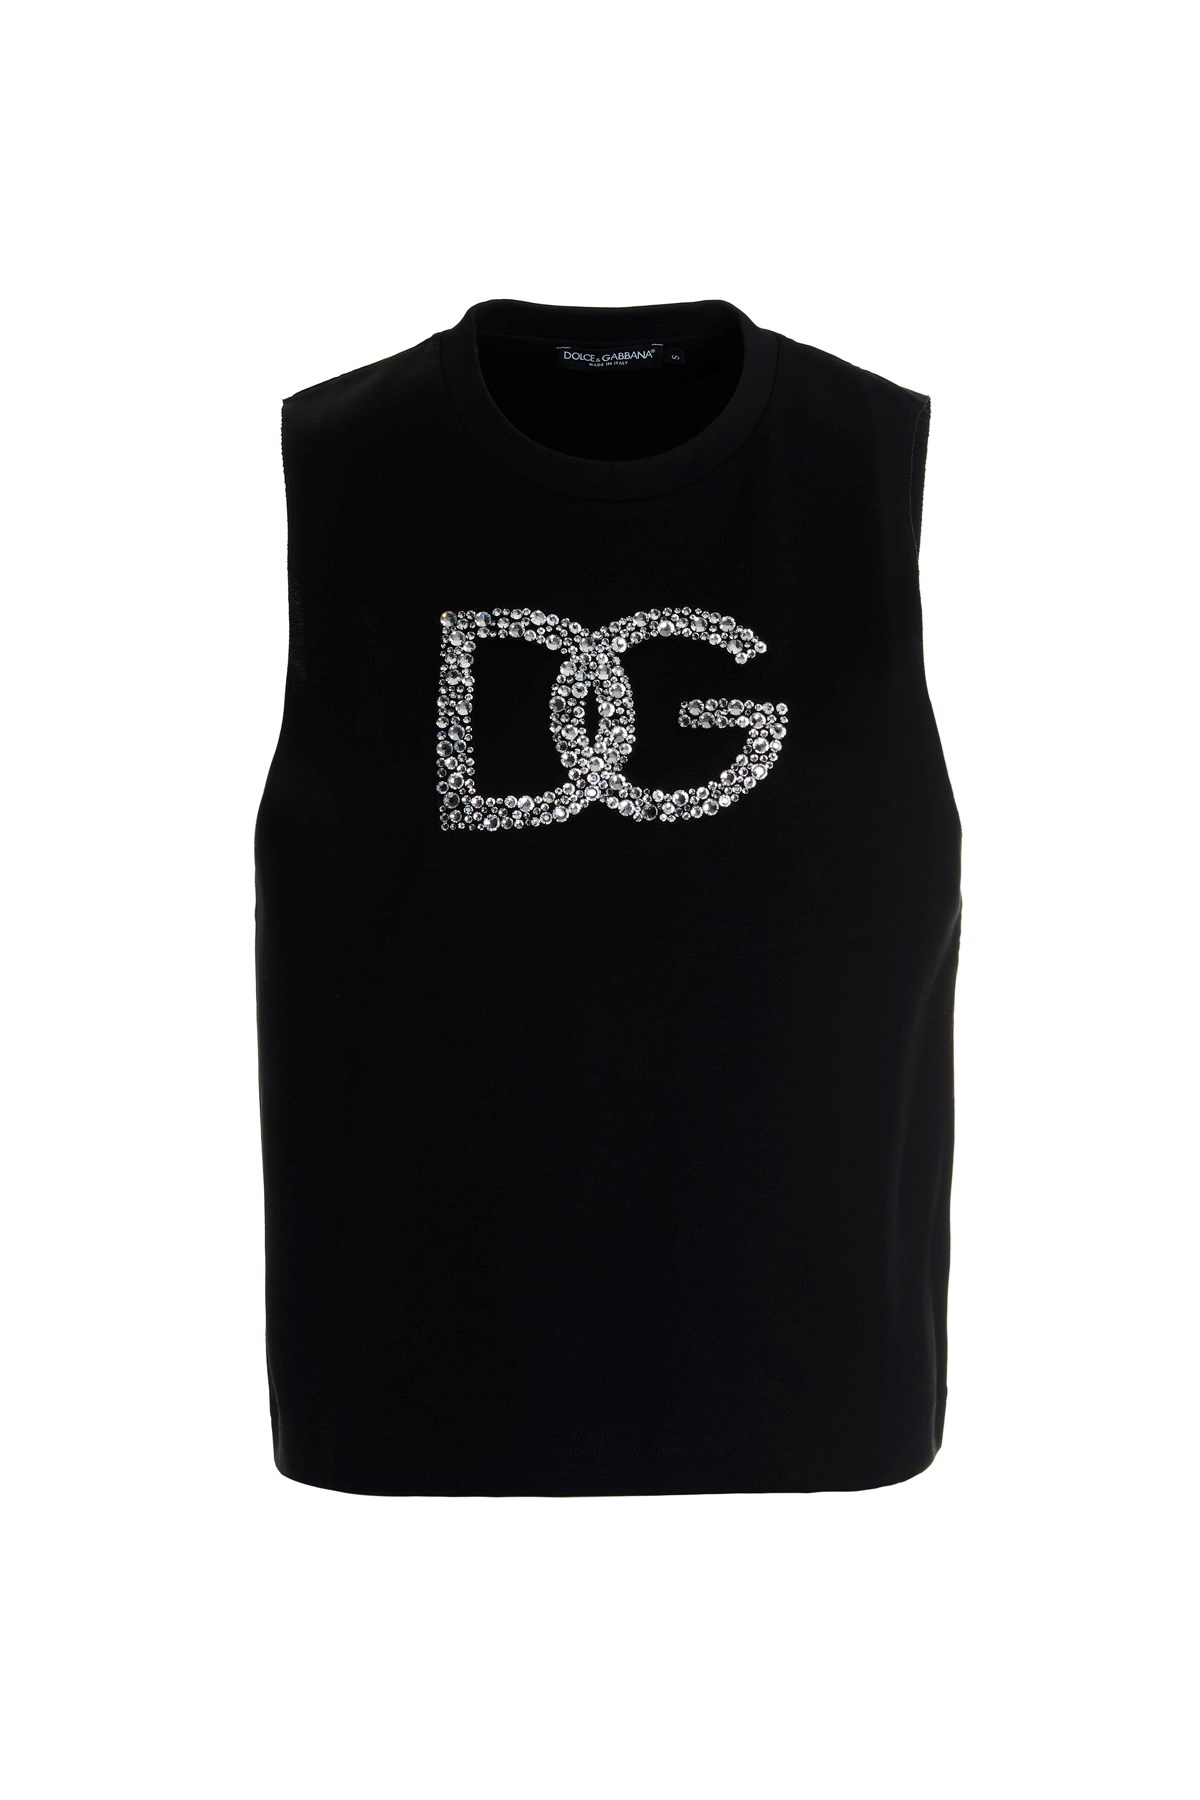 DOLCE & GABBANA Jewel Logo T-Shirt